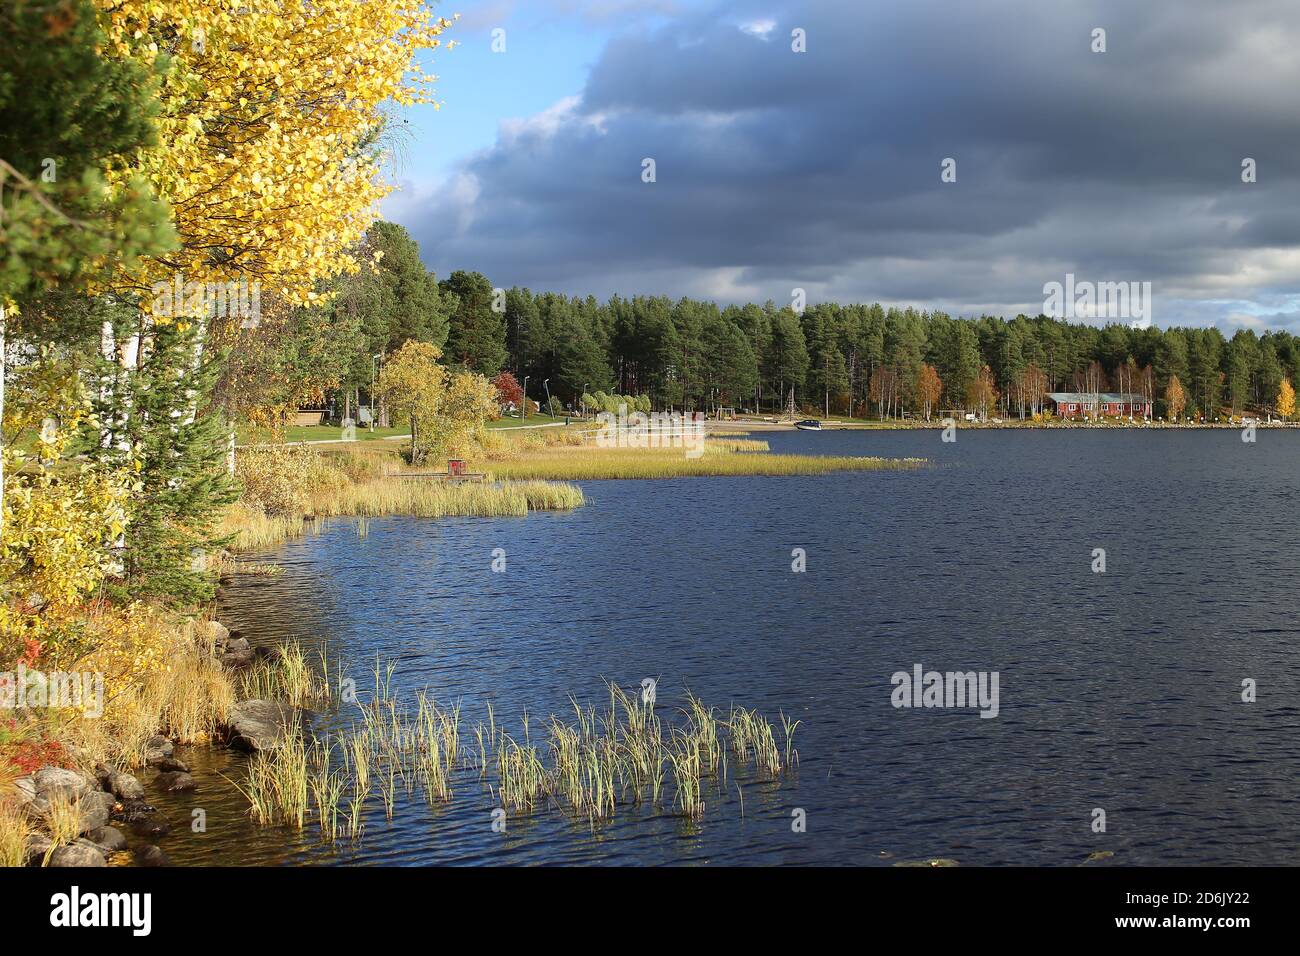 Shore of lake Talvatissjon in Jokkmokk, Sweden. Stock Photo